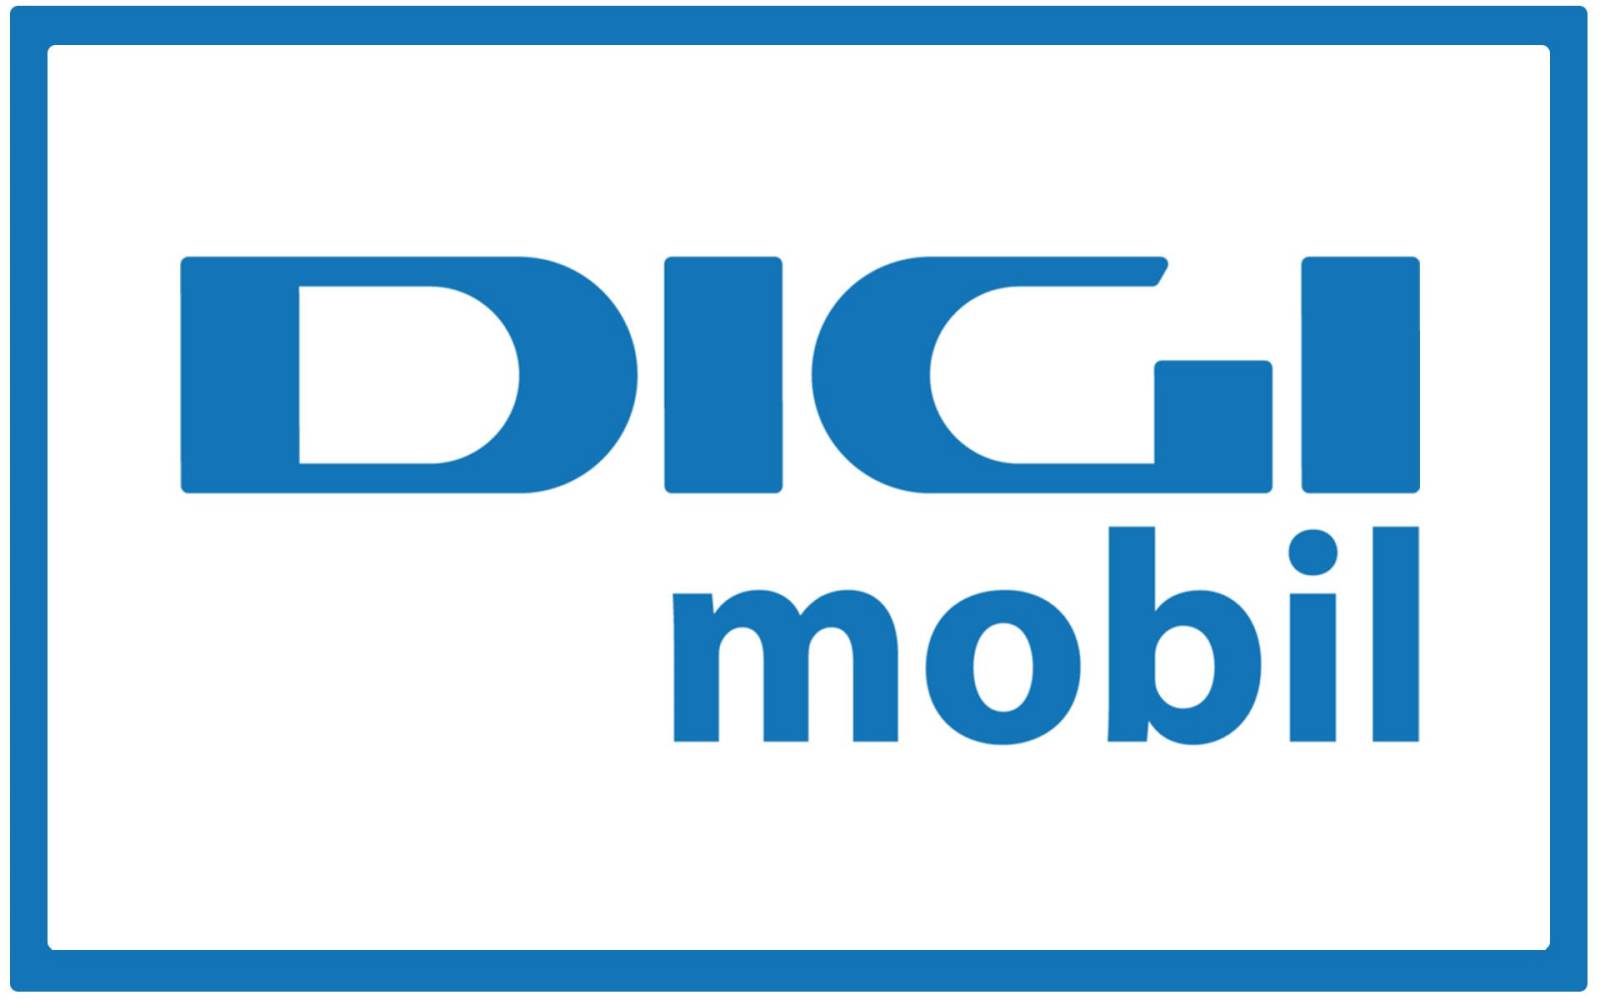 Digi Mobil. FANTASTISKE nyheder, hvad sker der med kunder i 2019